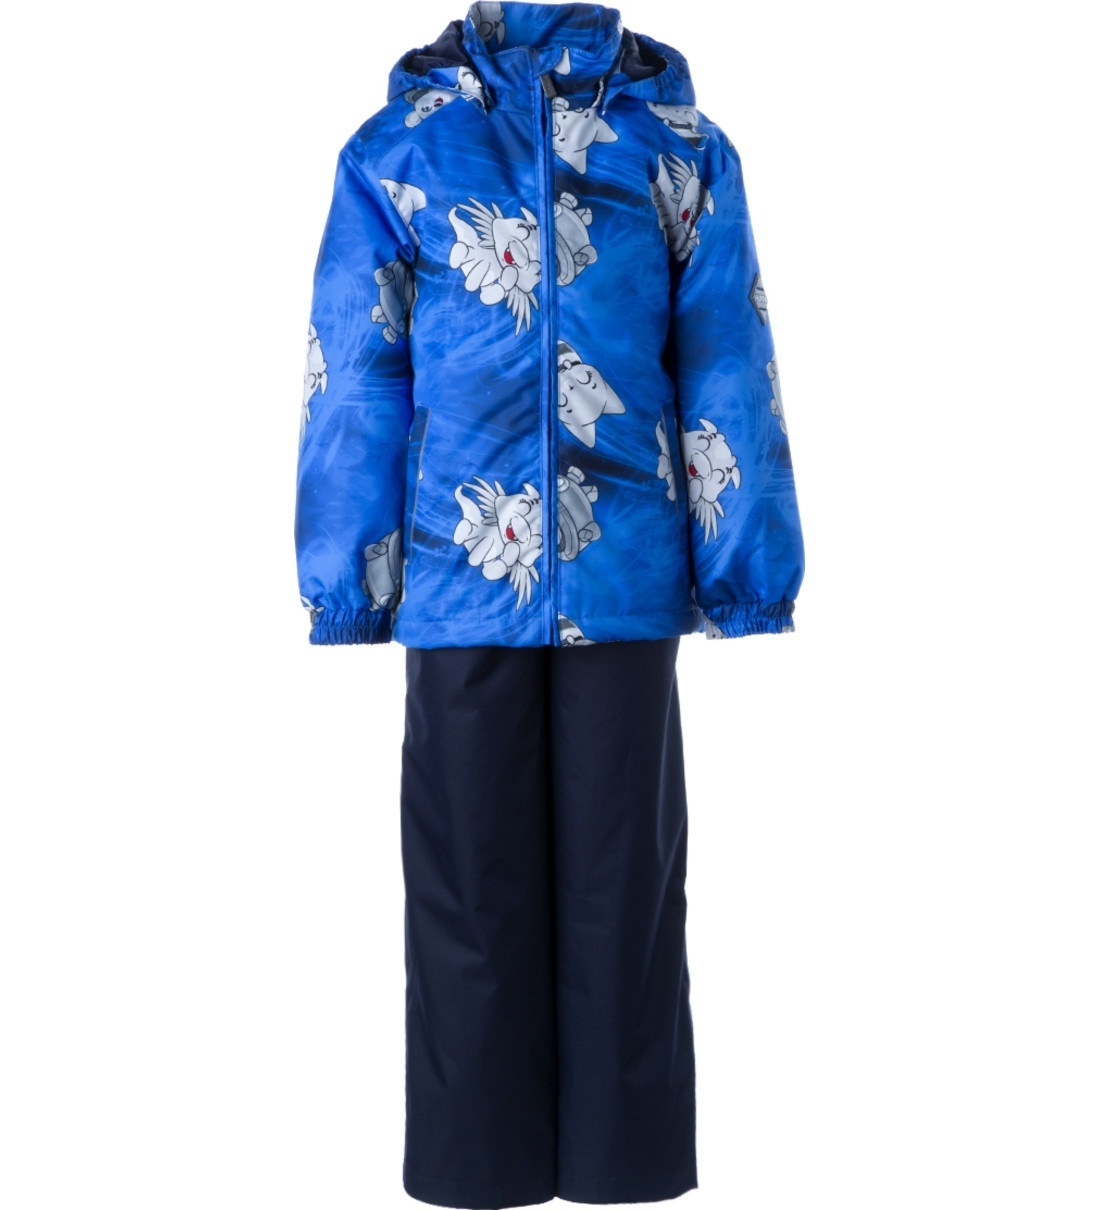 Комплект верхней одежды Huppa YOKO, синий, 122